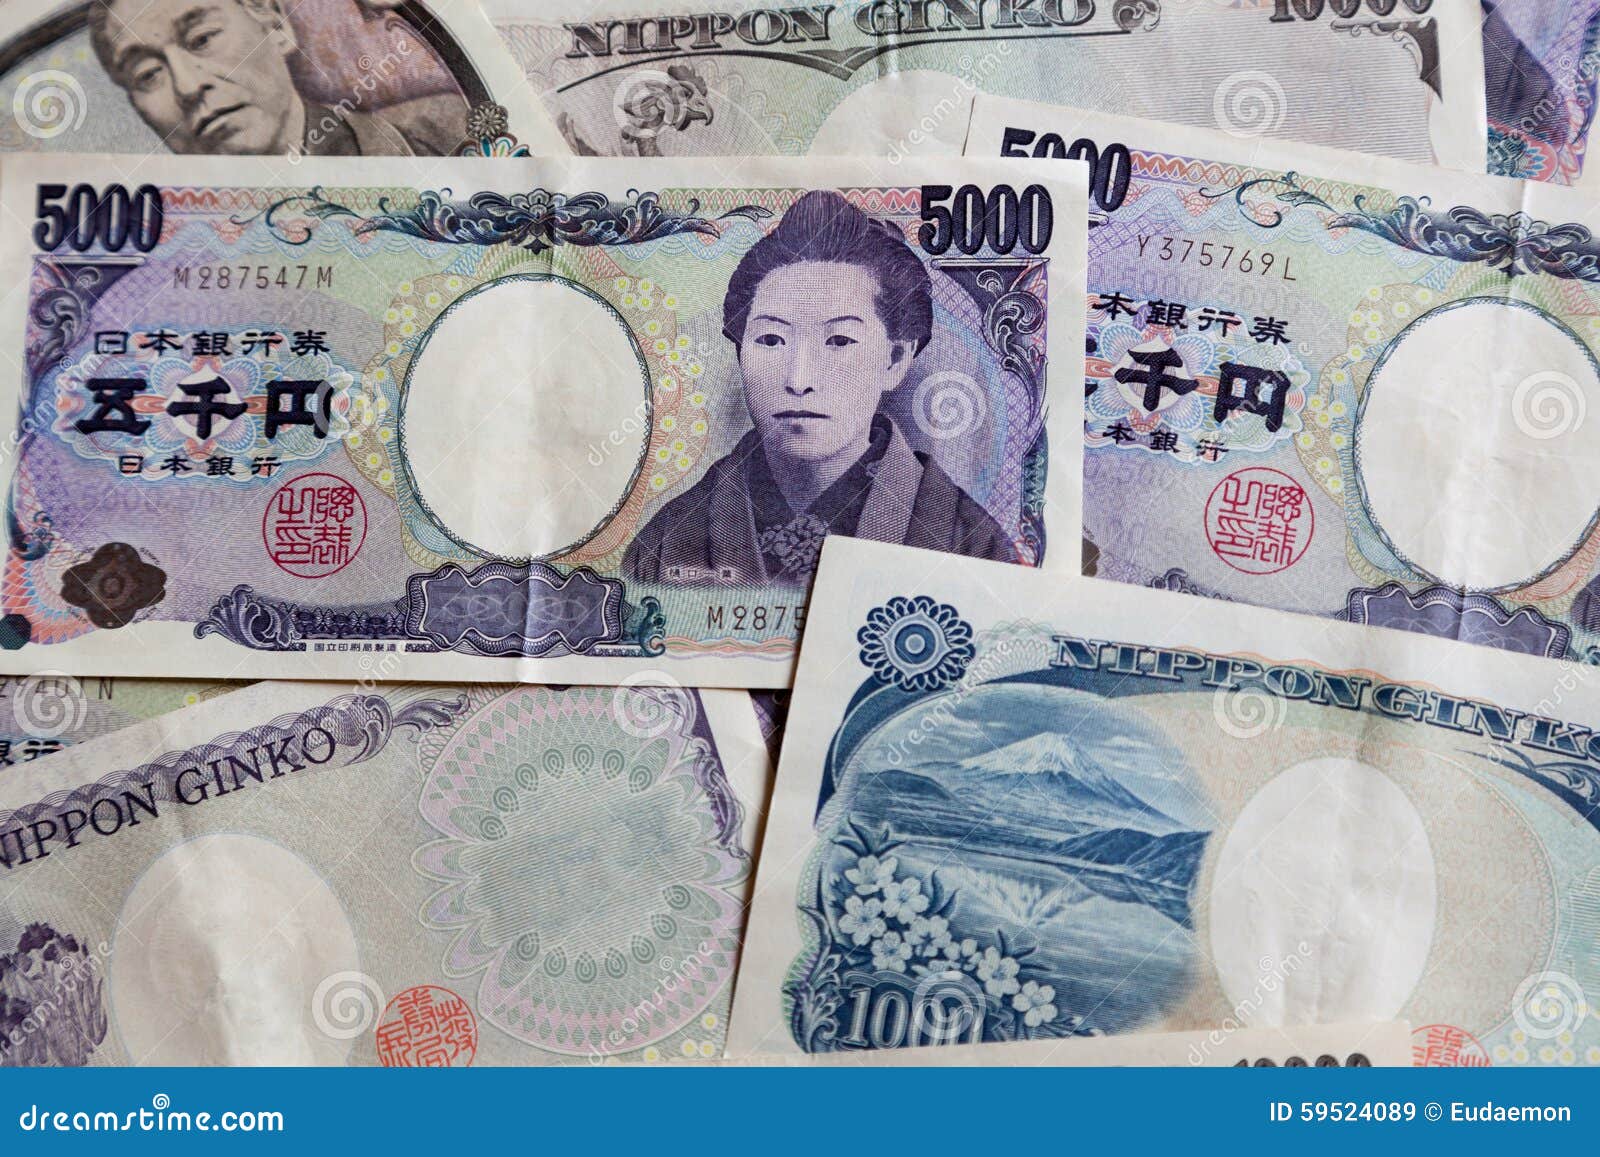 japanese 5000 yen bill